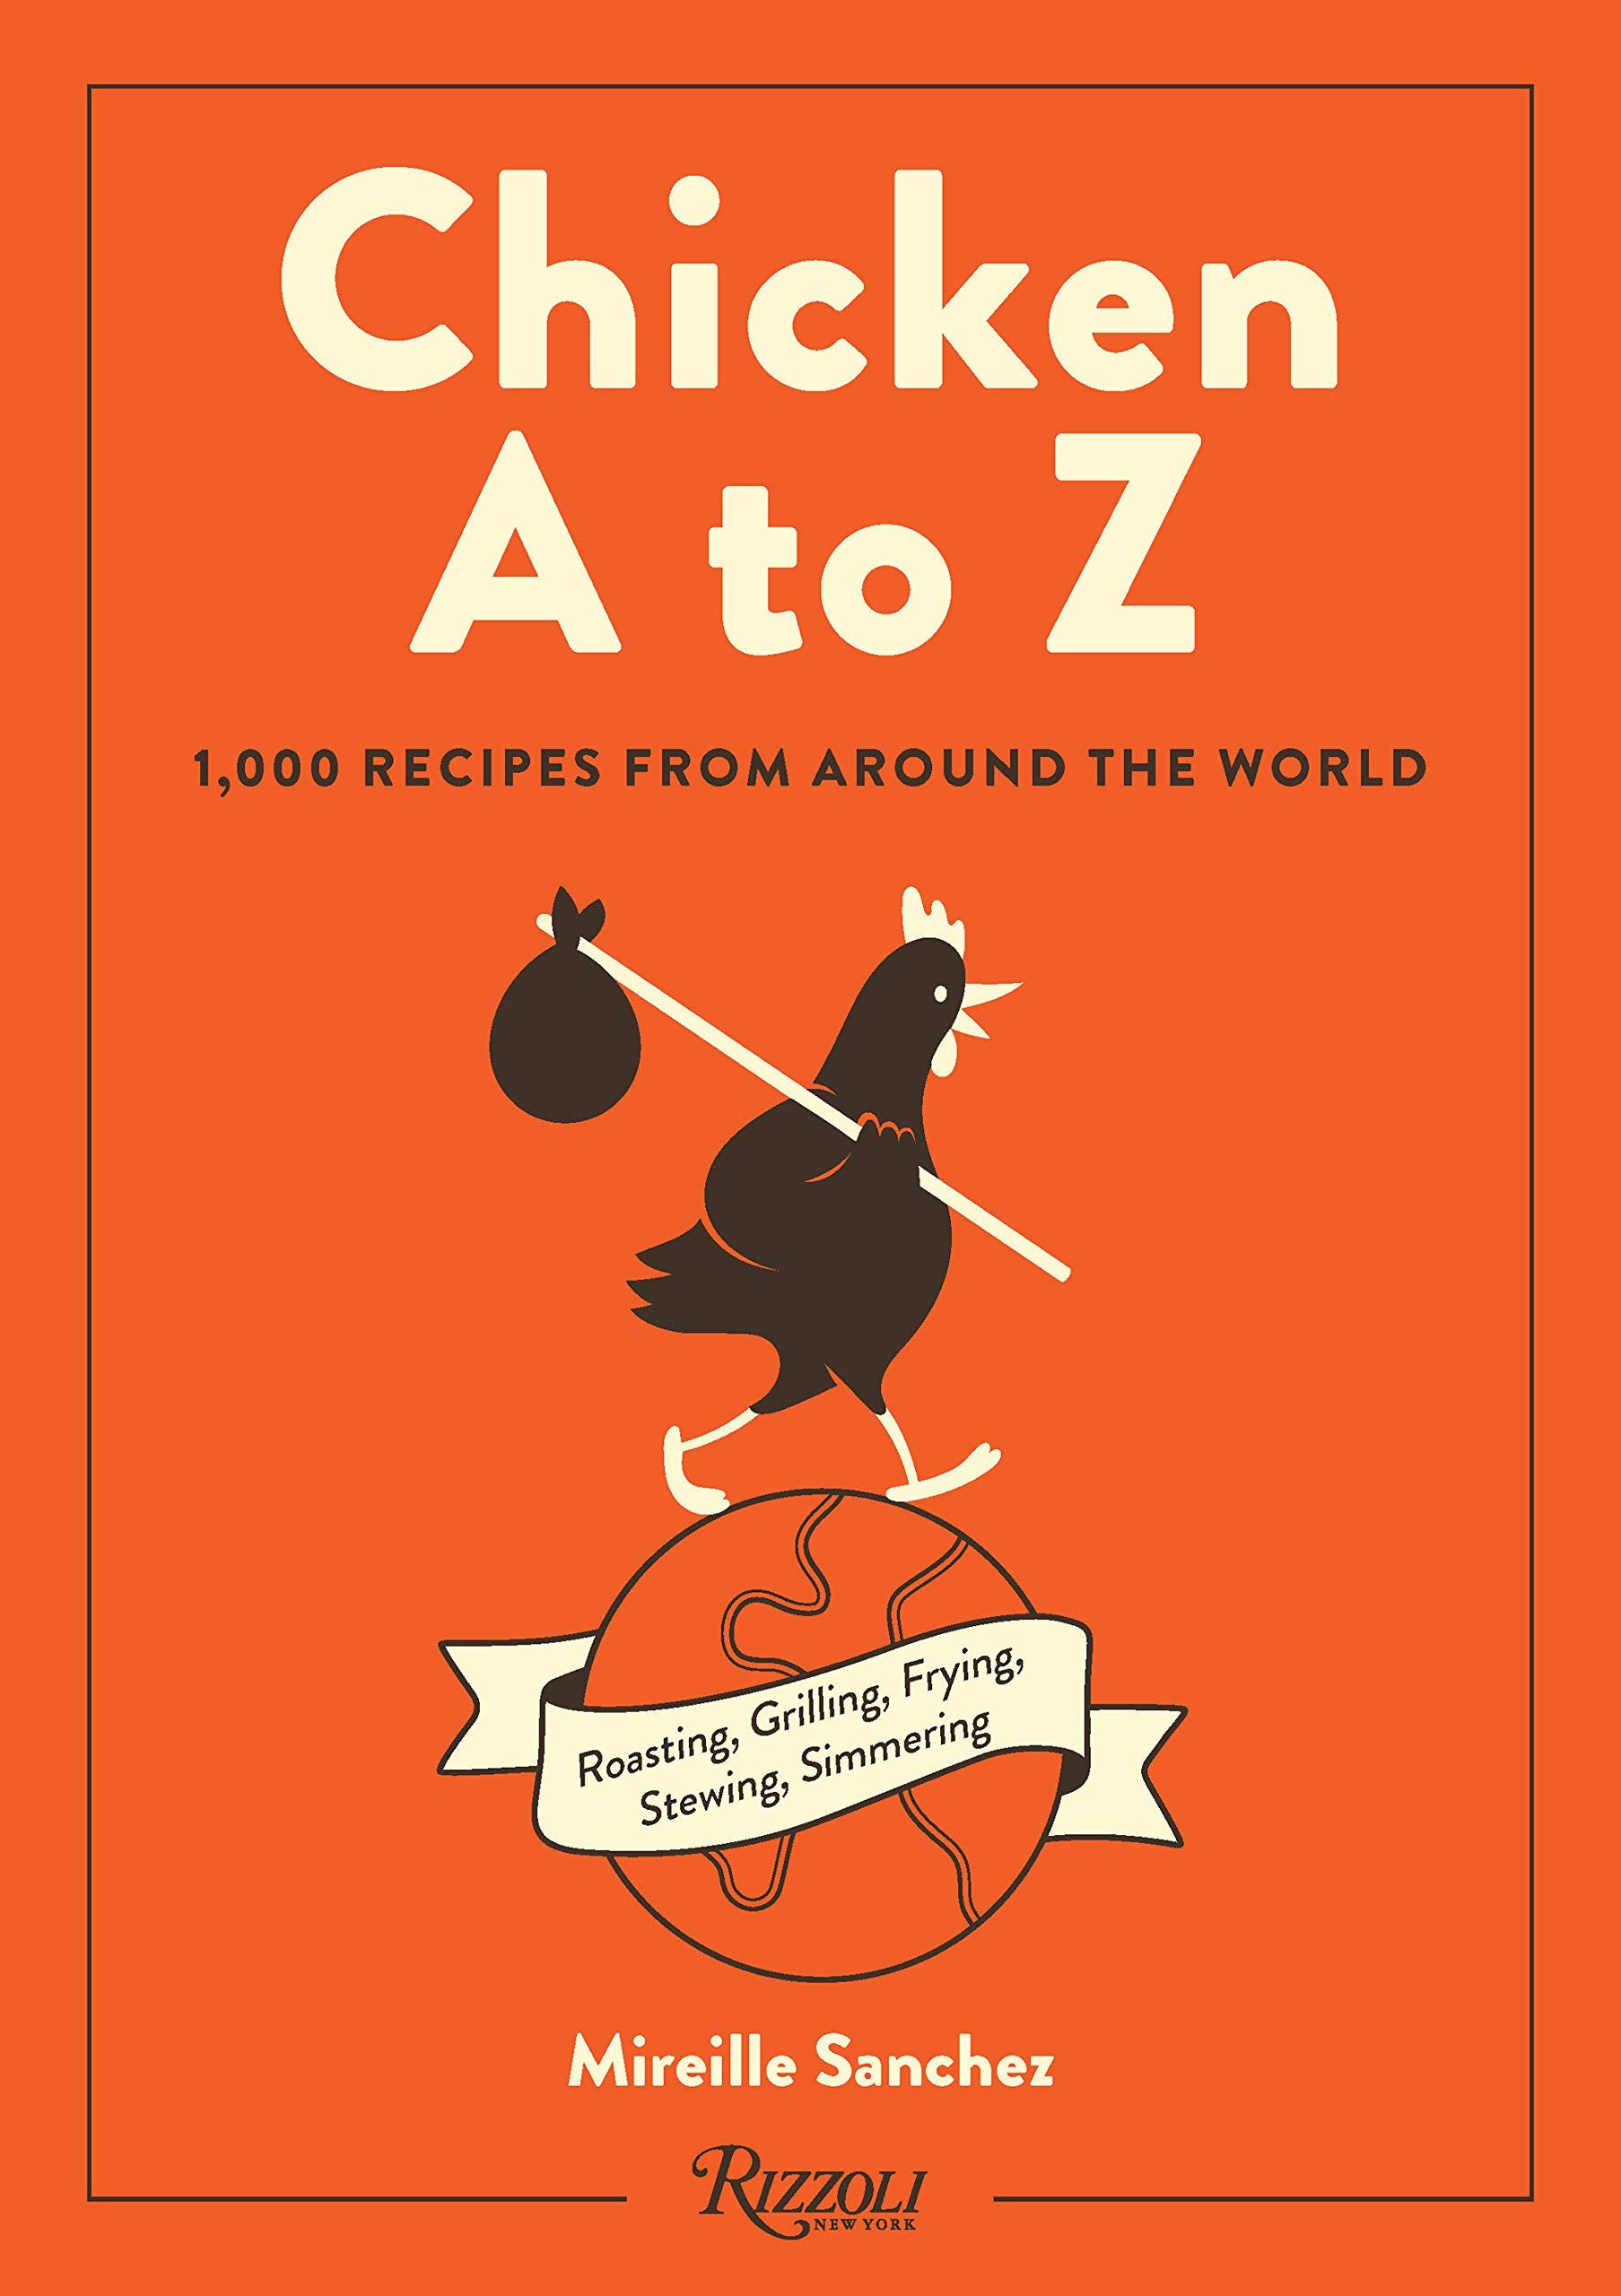 Chicken A to Z: 1,000 Recipes from Around the World (Mireille Sanchez)